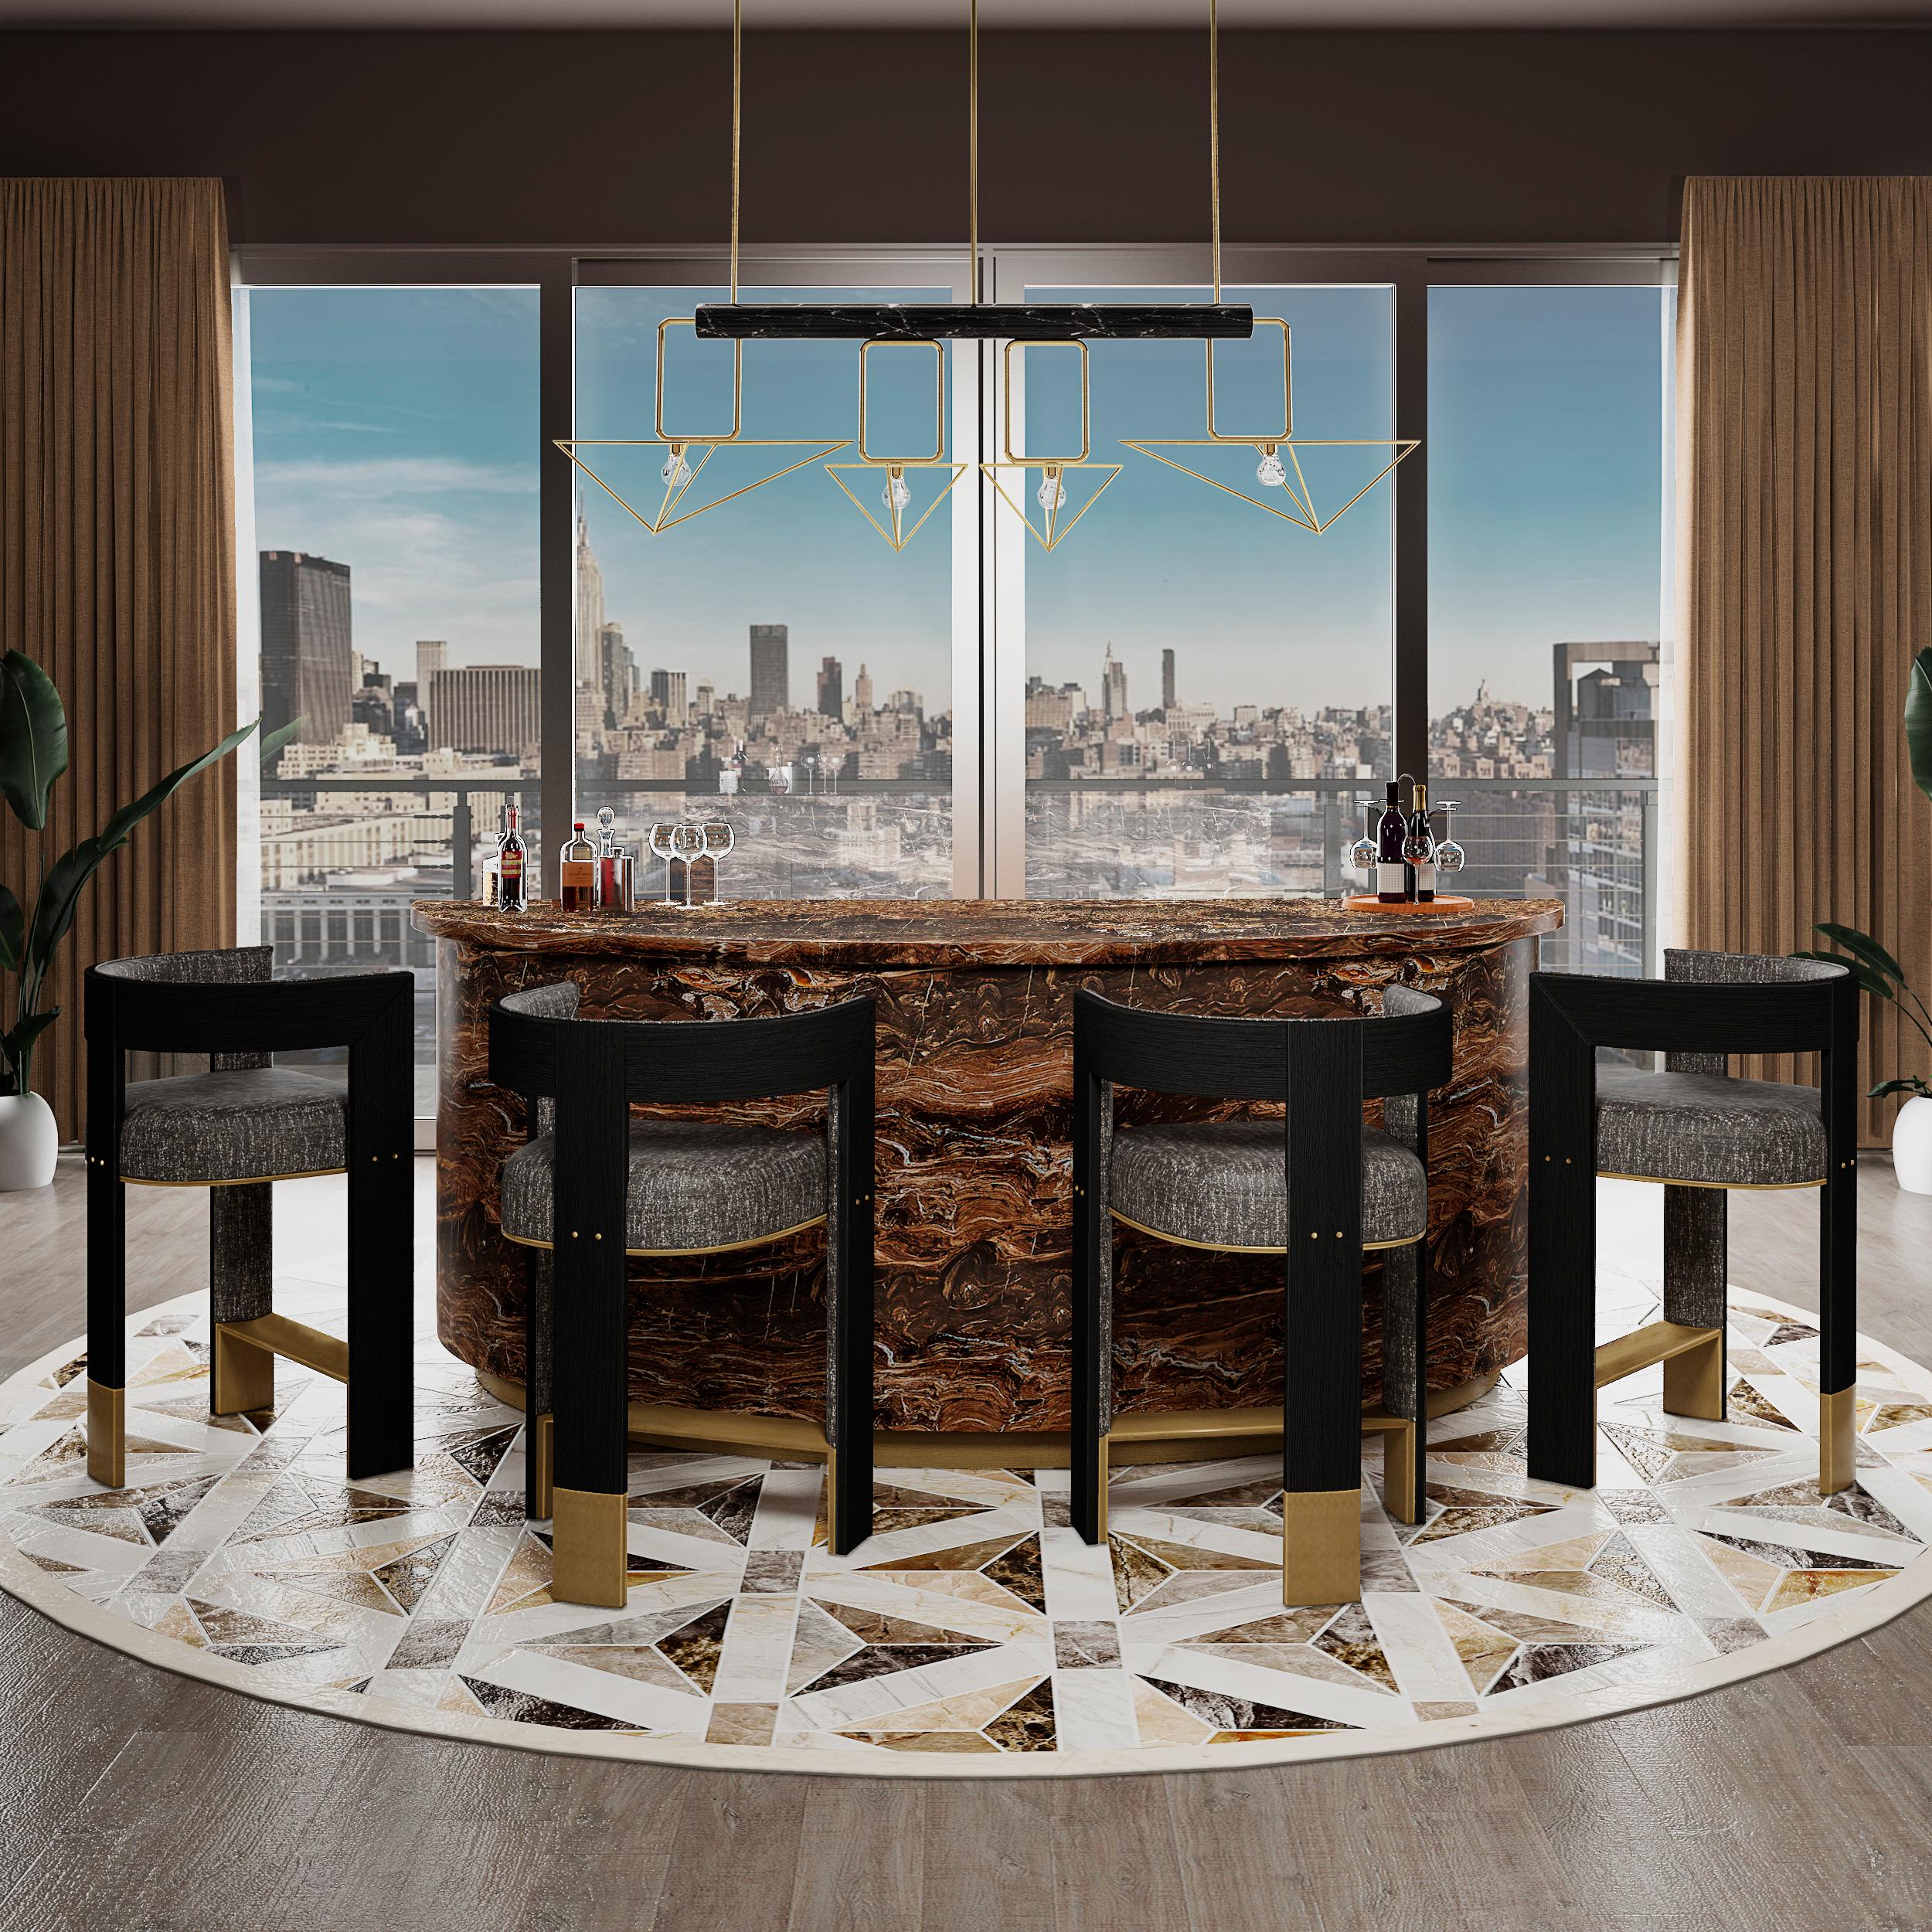 La chaise de bar Brooklyn est l'une des plus récentes pièces conçues par Porus Studio. 
Depuis sa construction, le pont de Brooklyn est devenu une icône de la ville de New York. Connecter Manhattan 
à New York, c'était la première traversée fixe